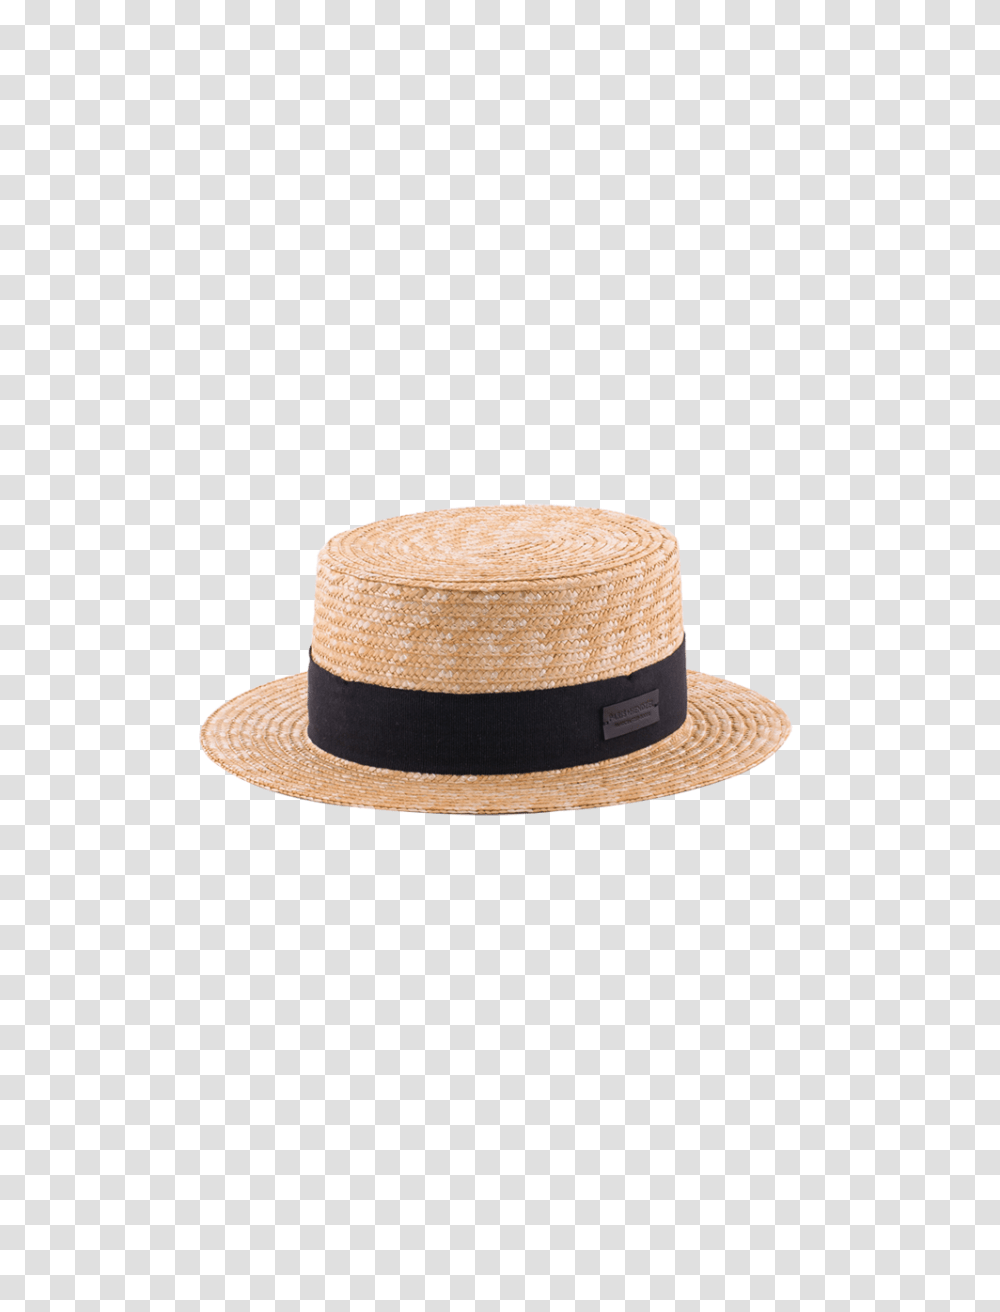 Small Brim Canotier, Apparel, Sun Hat, Cowboy Hat Transparent Png